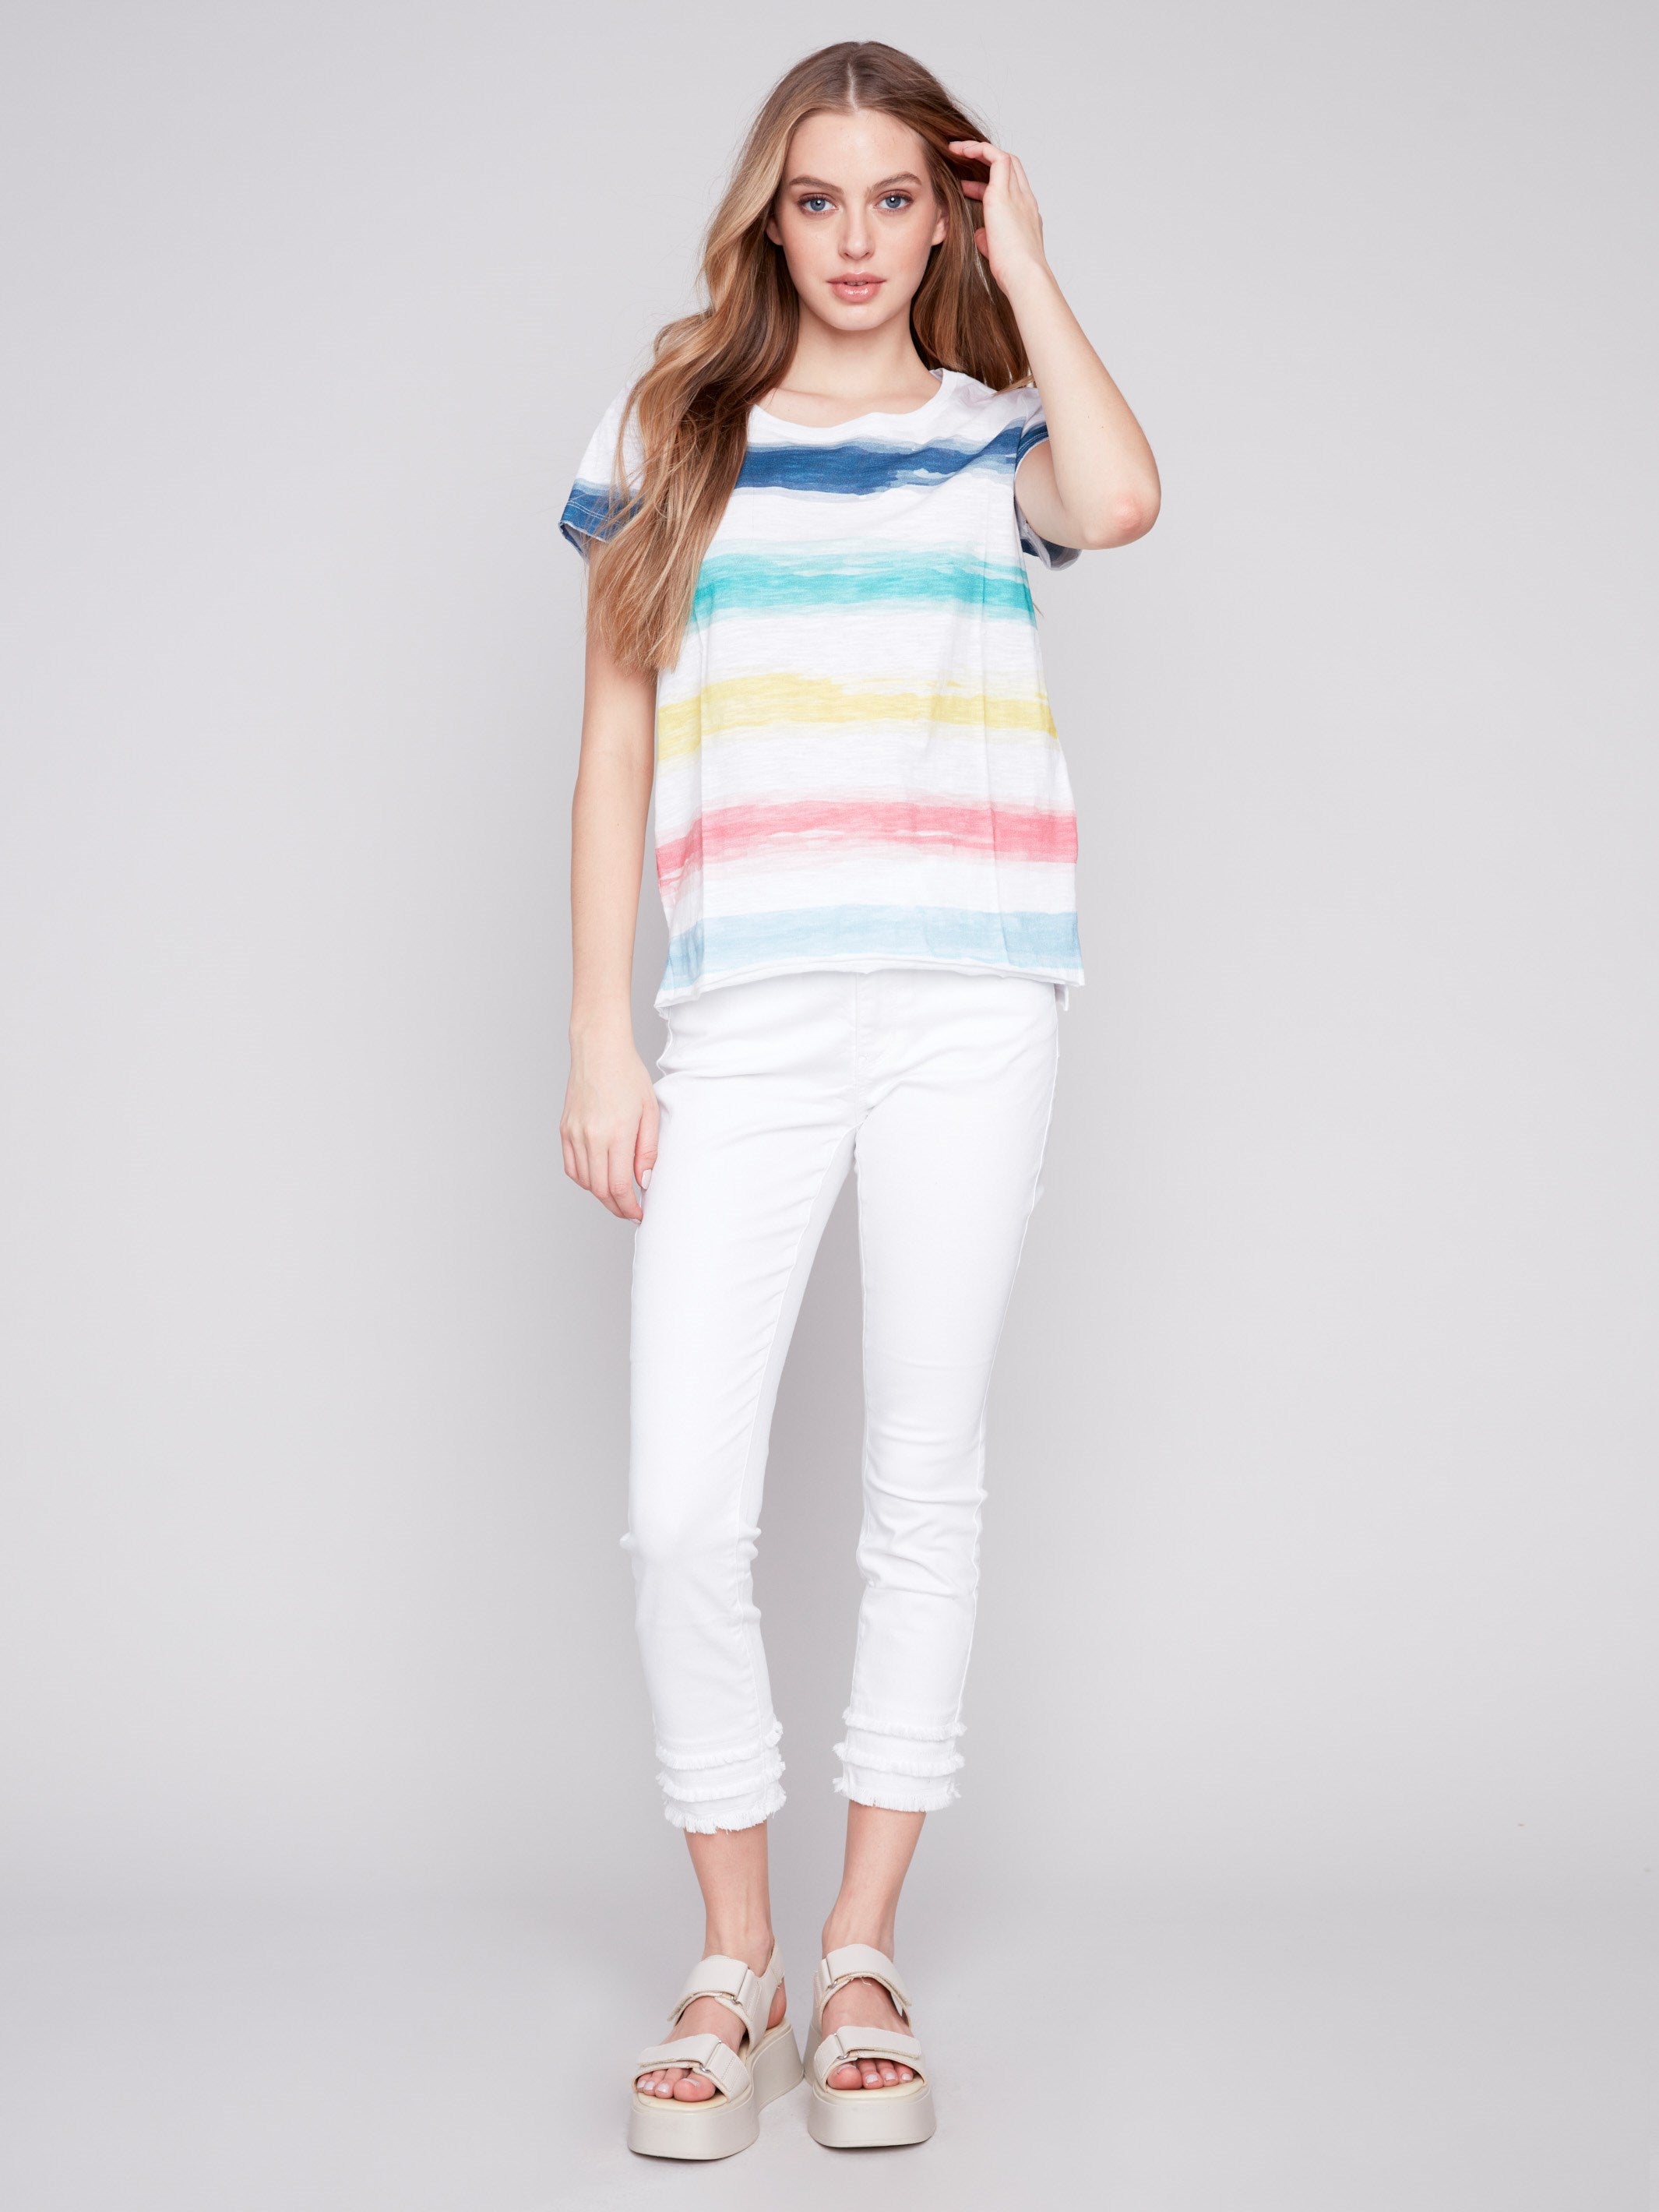 Organic Cotton Slub Knit T-Shirt - Stripes